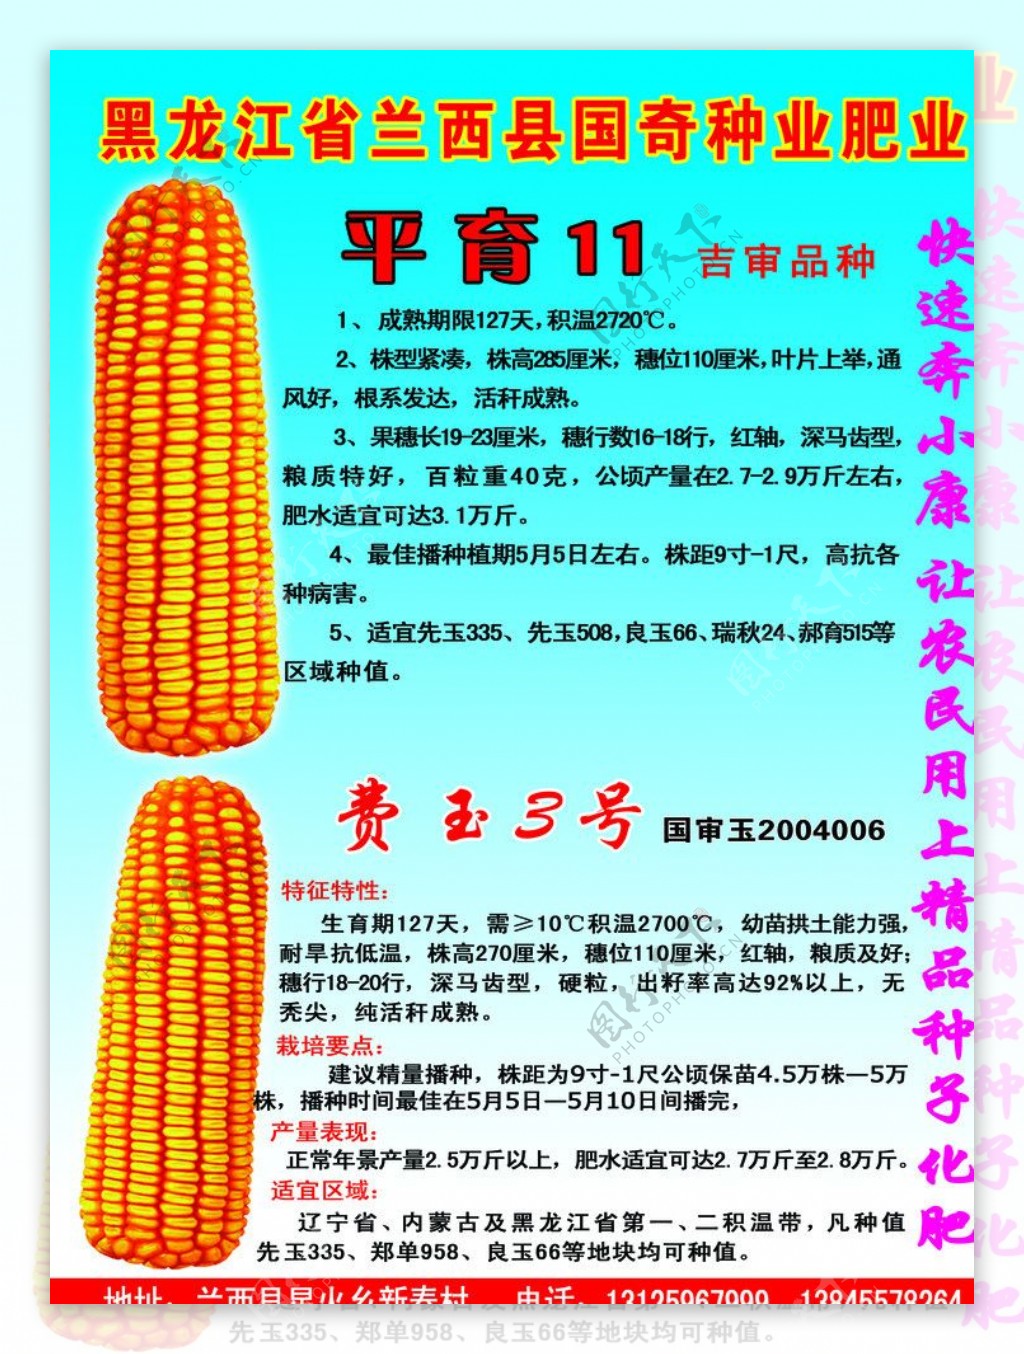 黑龙江省兰西县国奇种业肥业图片